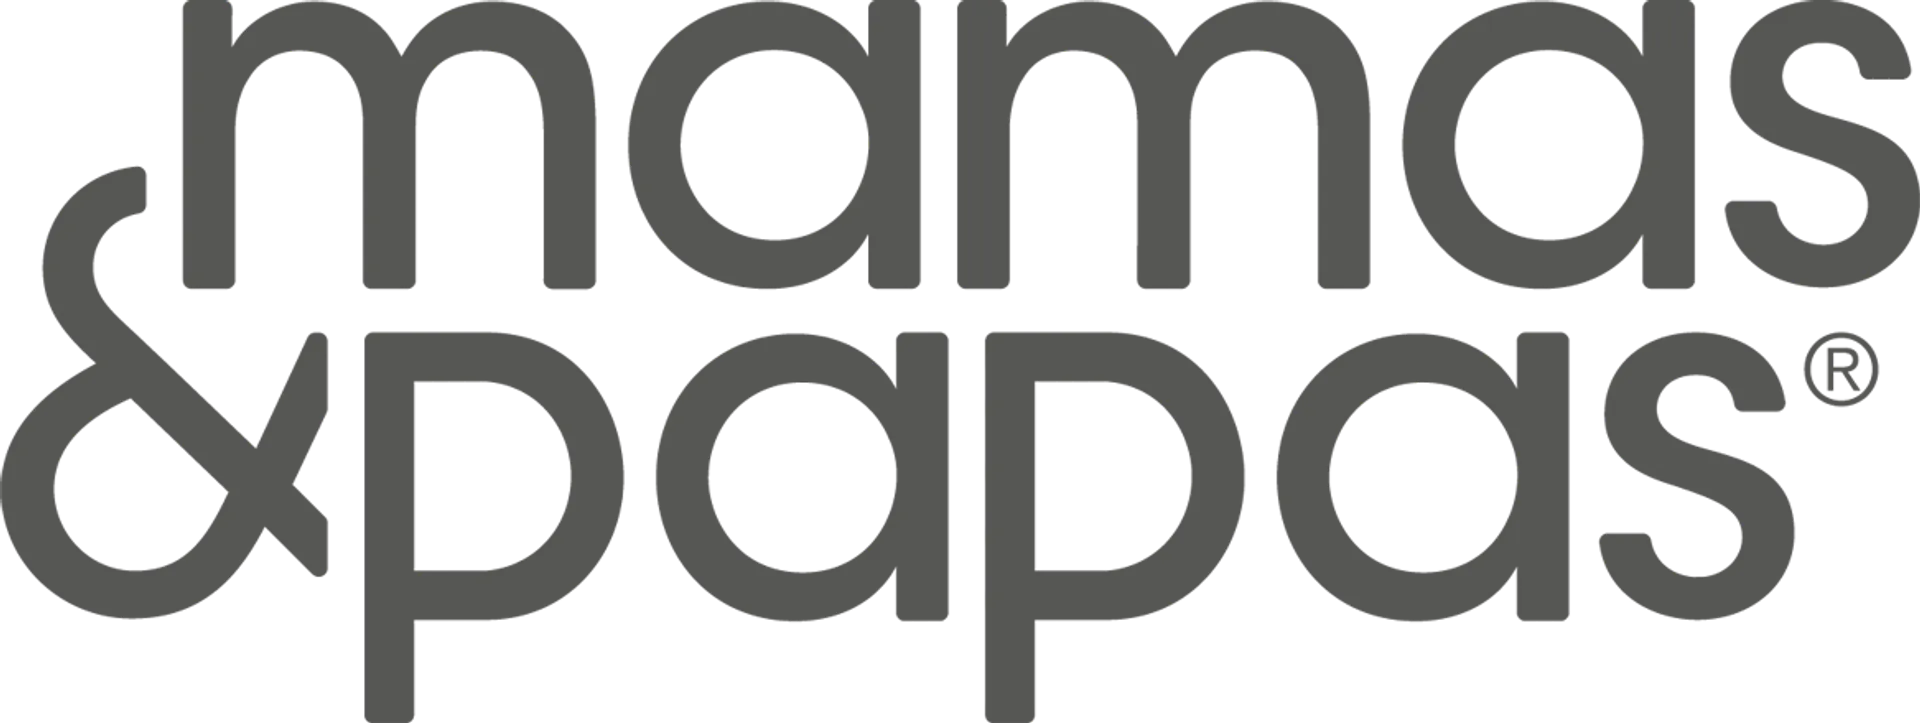 MAMAS & PAPAS logo. Current catalogue